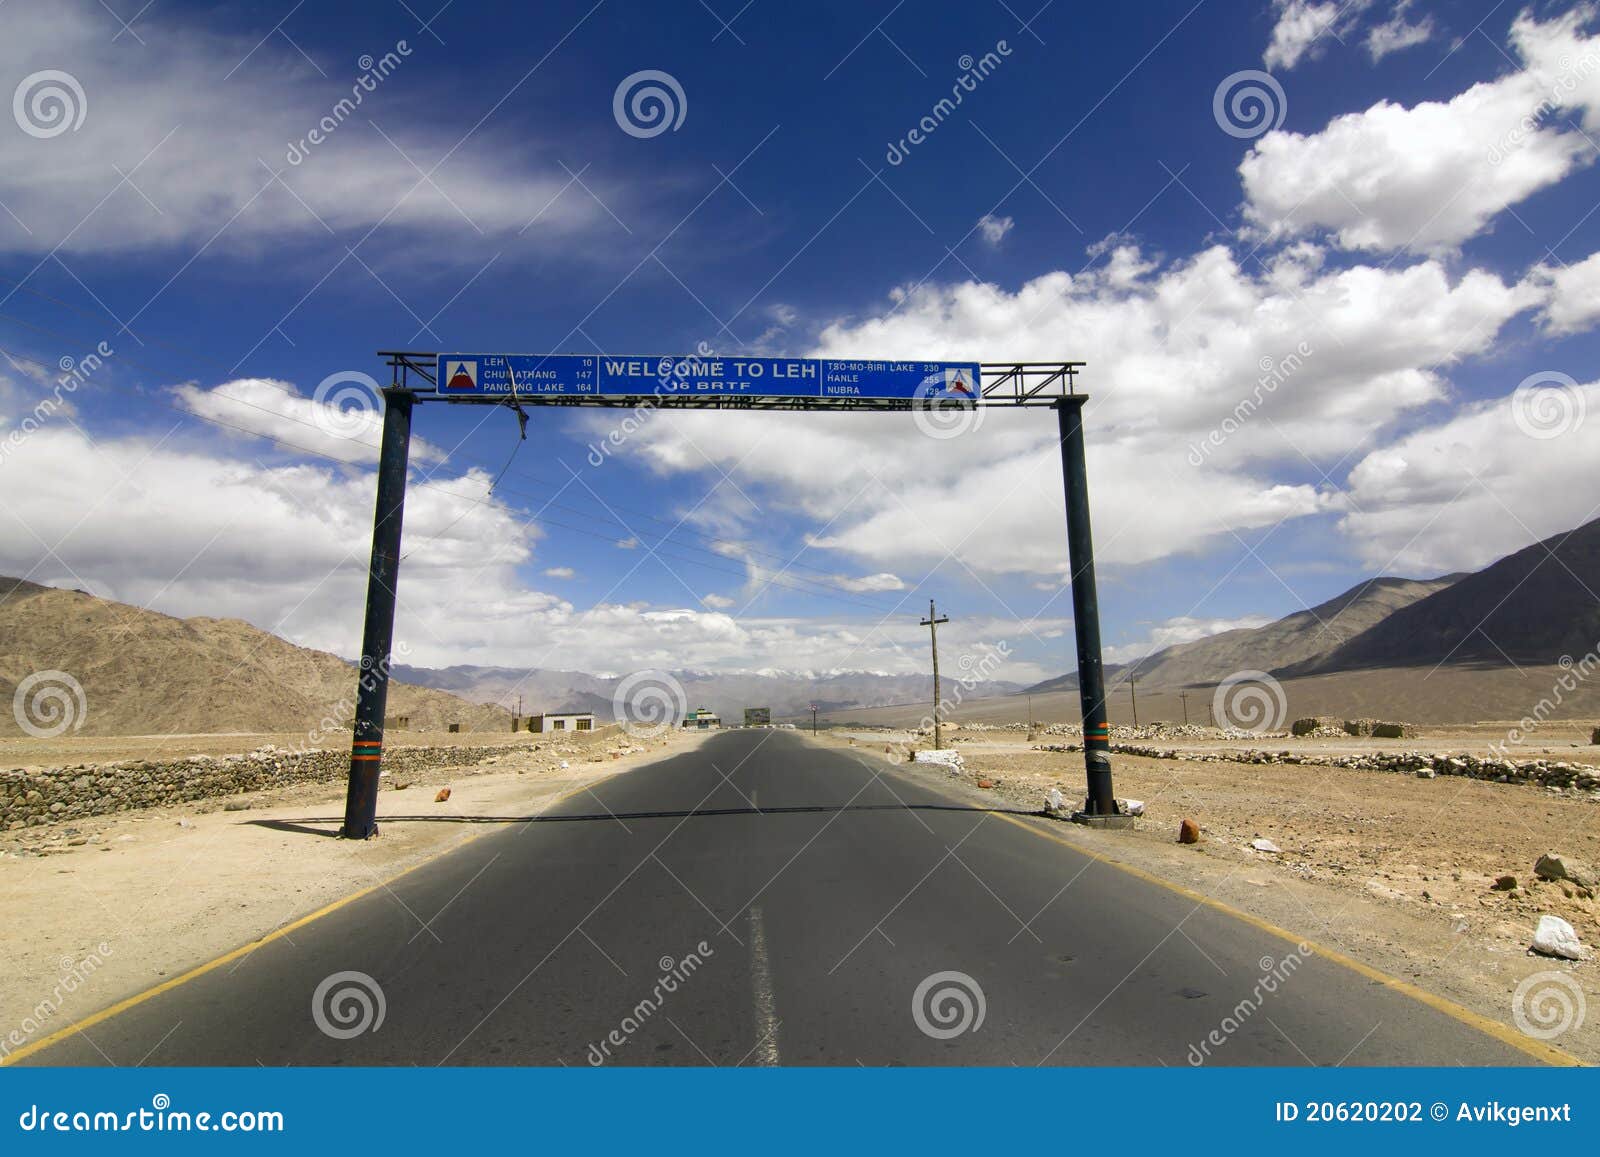 road signs in srinagar leh highway, ladakh